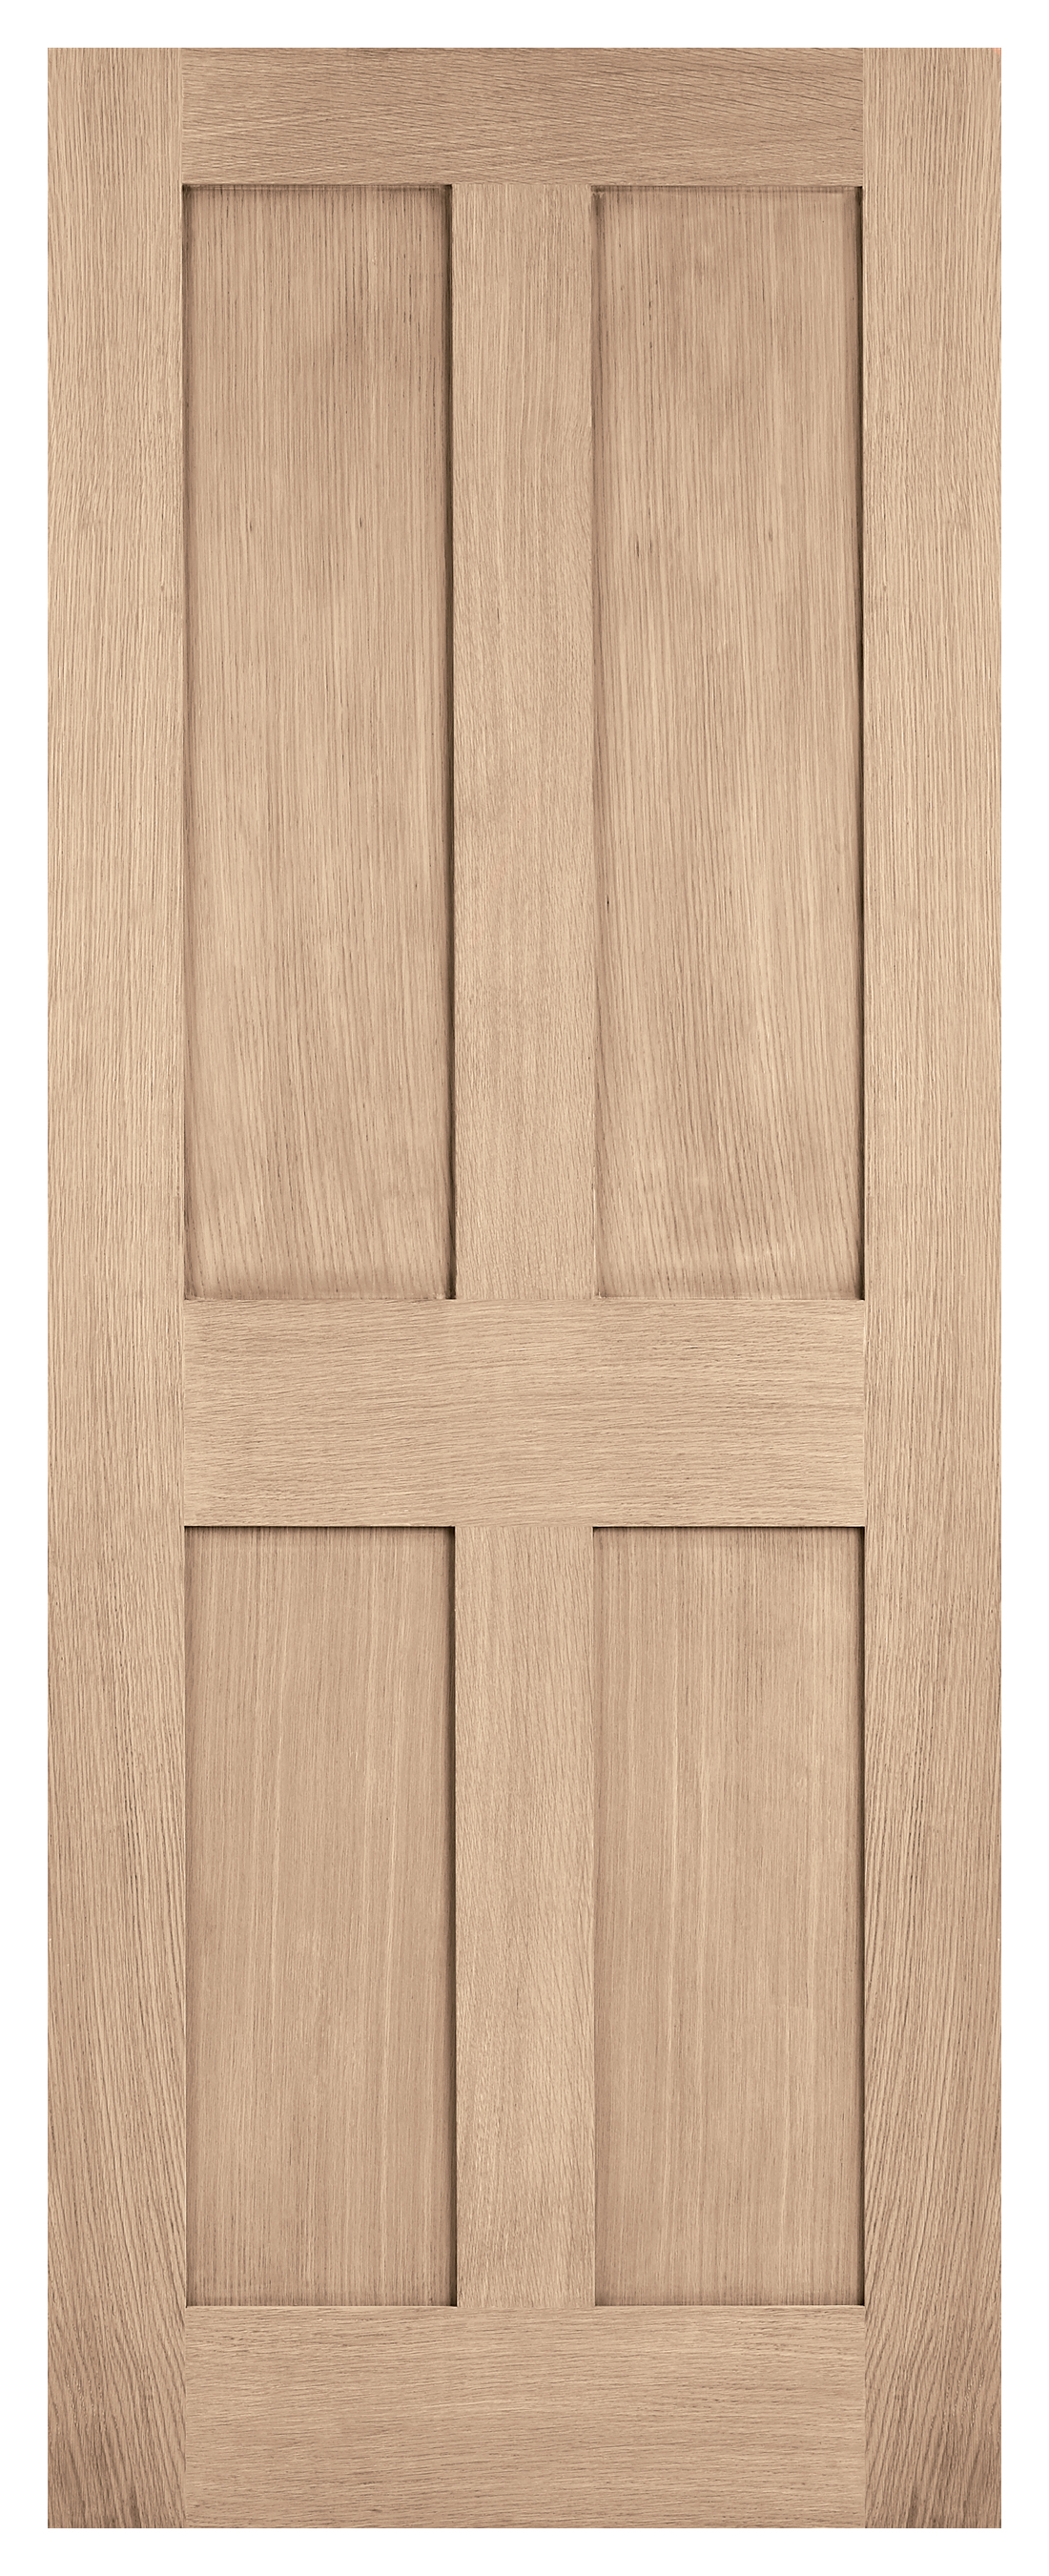 LPD Internal London 4 Panel Unfinished Oak Door - 1981mm